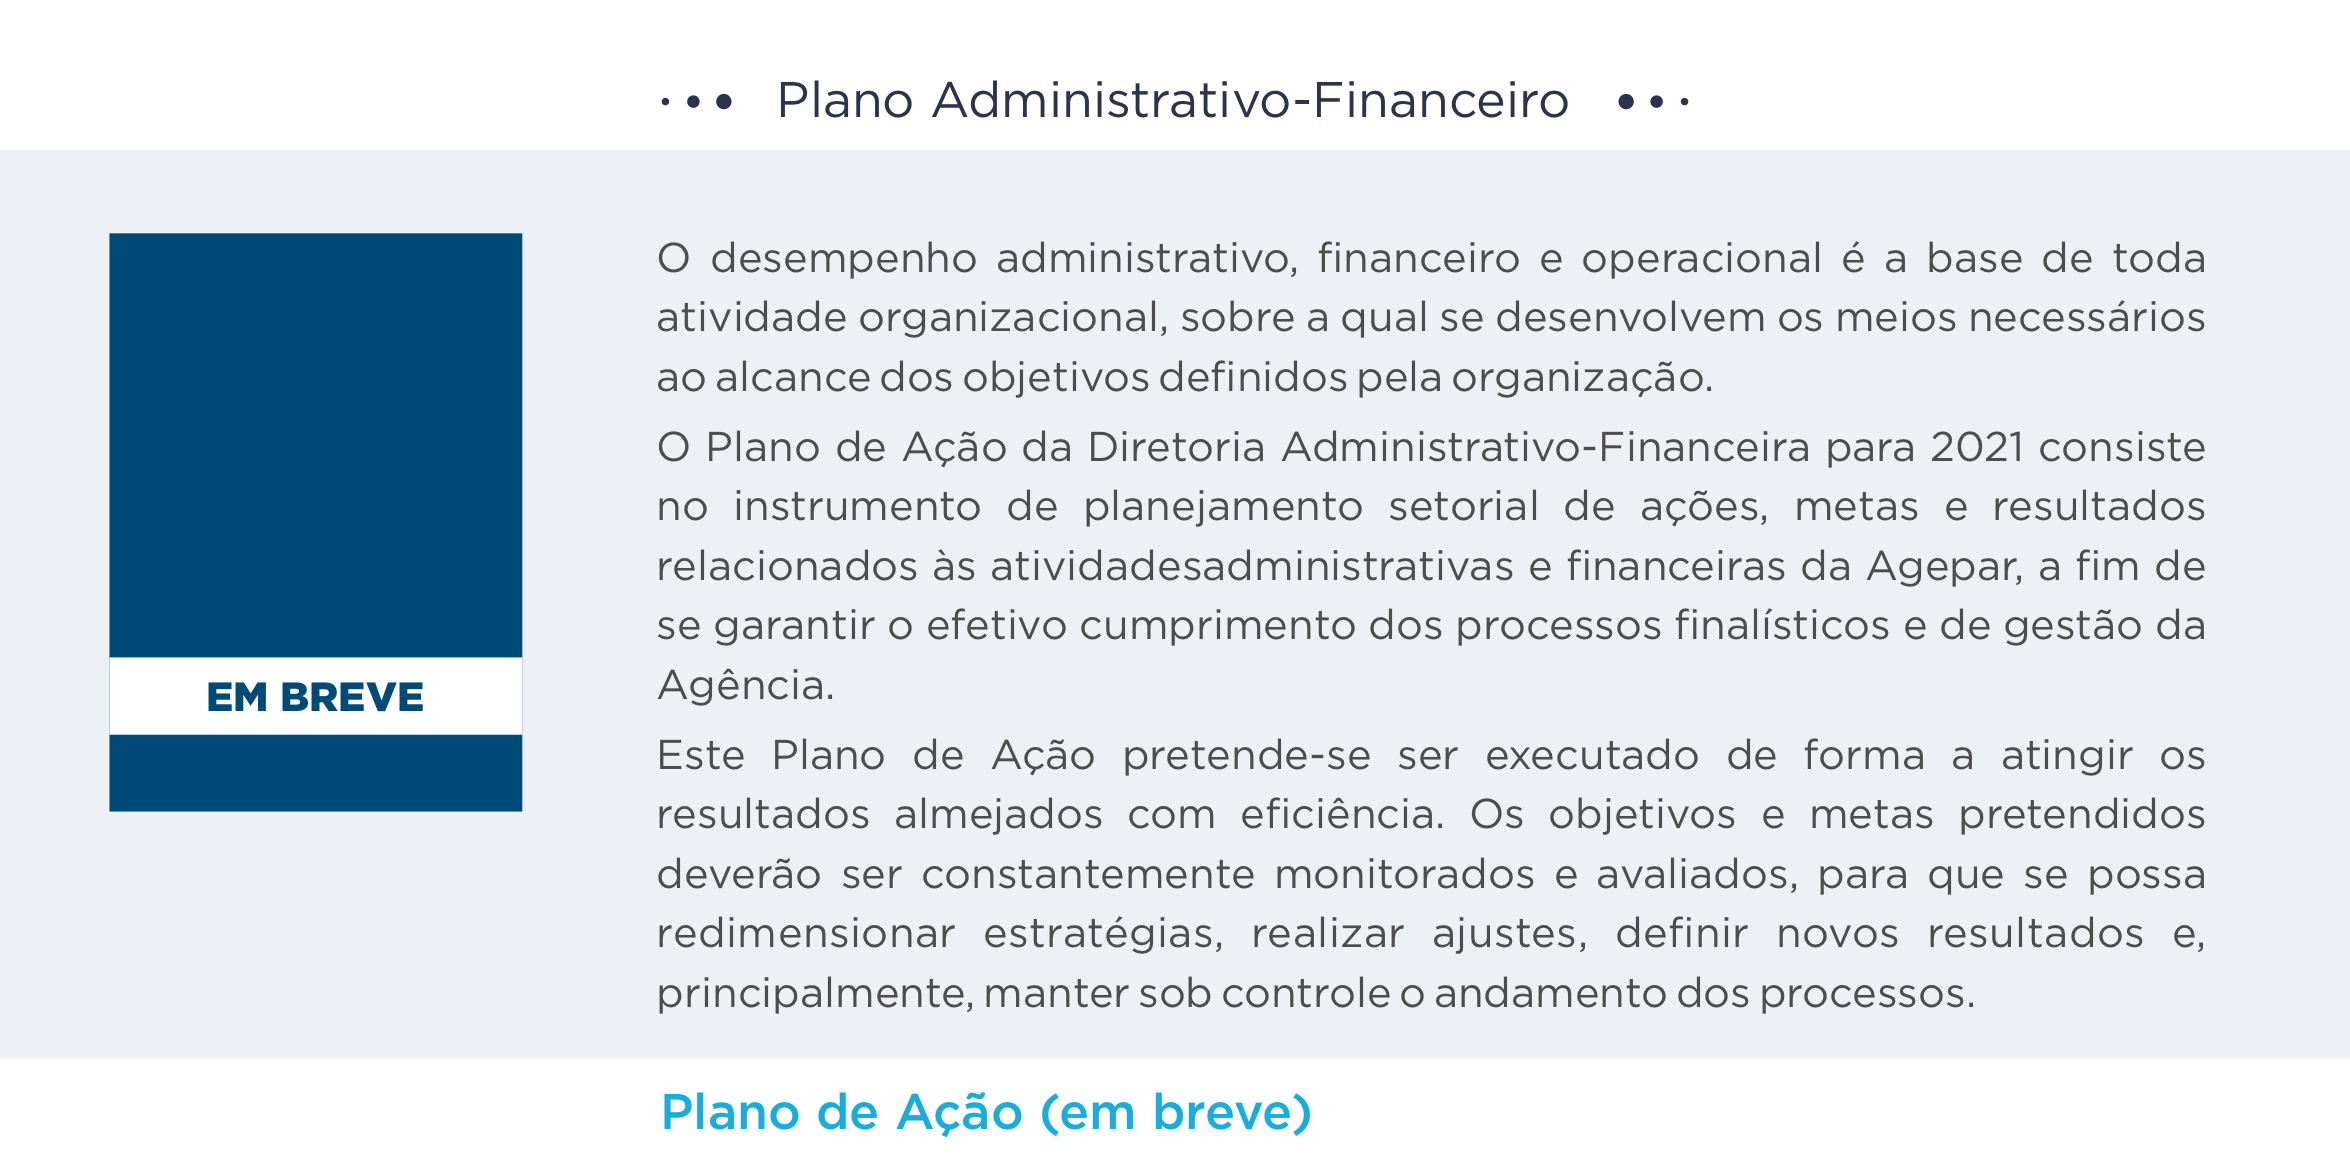 Plano Administrativo-Financeiro